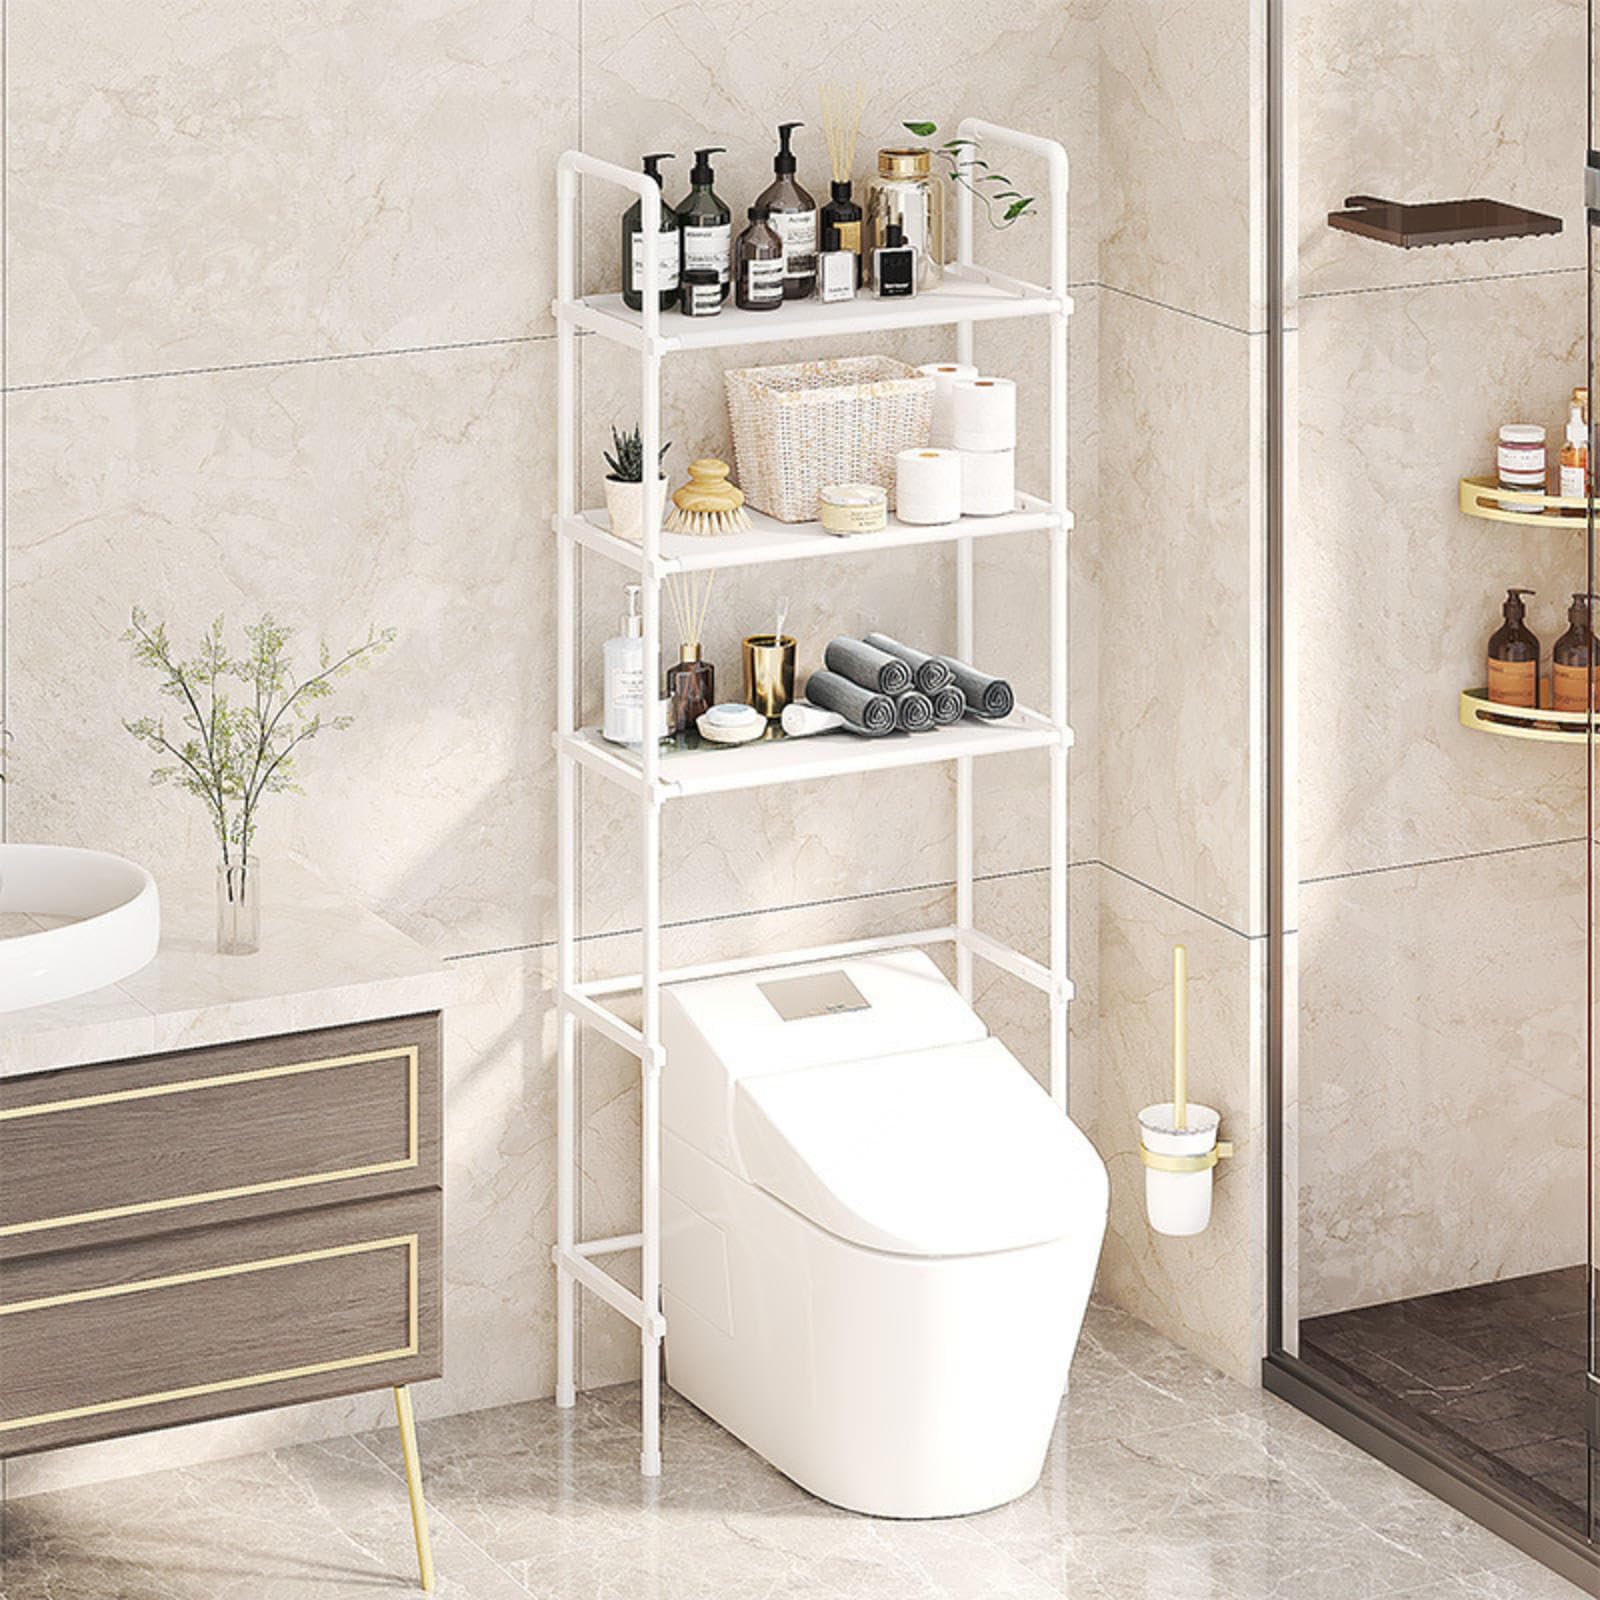 Toilettenregal Waschmaschinenregal Badezimmerregal Bad WC Stand Regal mit 3 Ablagen in schwarz platzsparend, leicht zu montieren,White